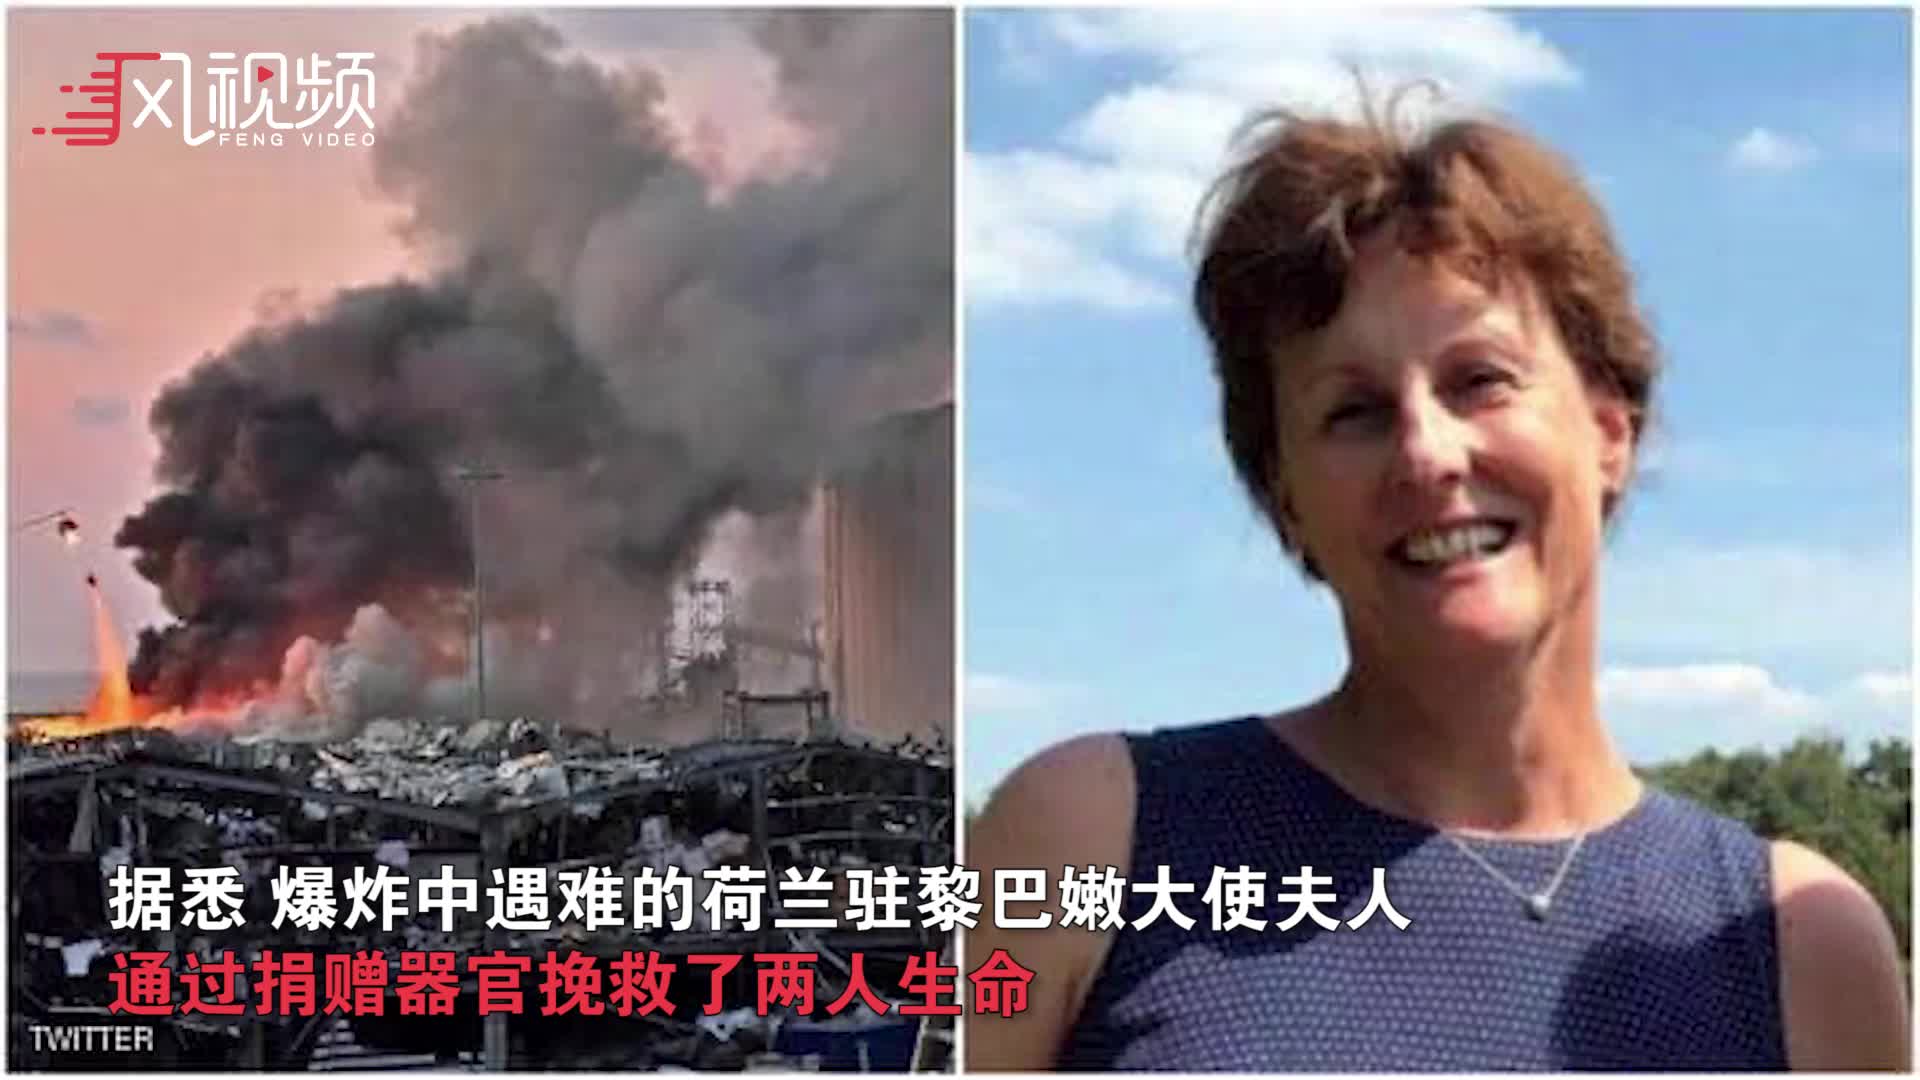 爆炸遇难荷兰大使夫人 通过器官捐赠挽救两人生命